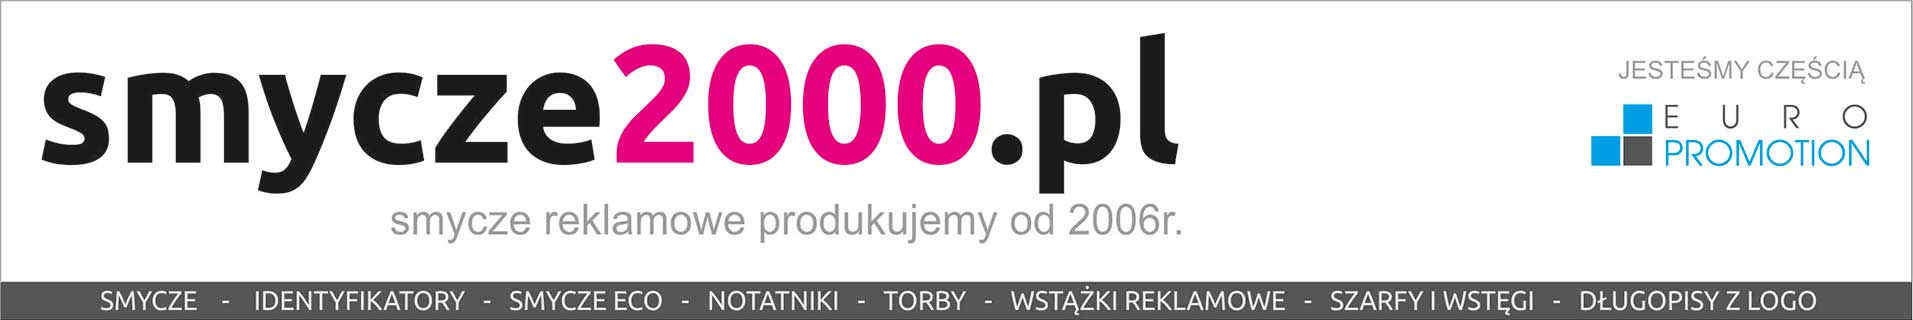 Smycze2000.pl Smycze reklamowe